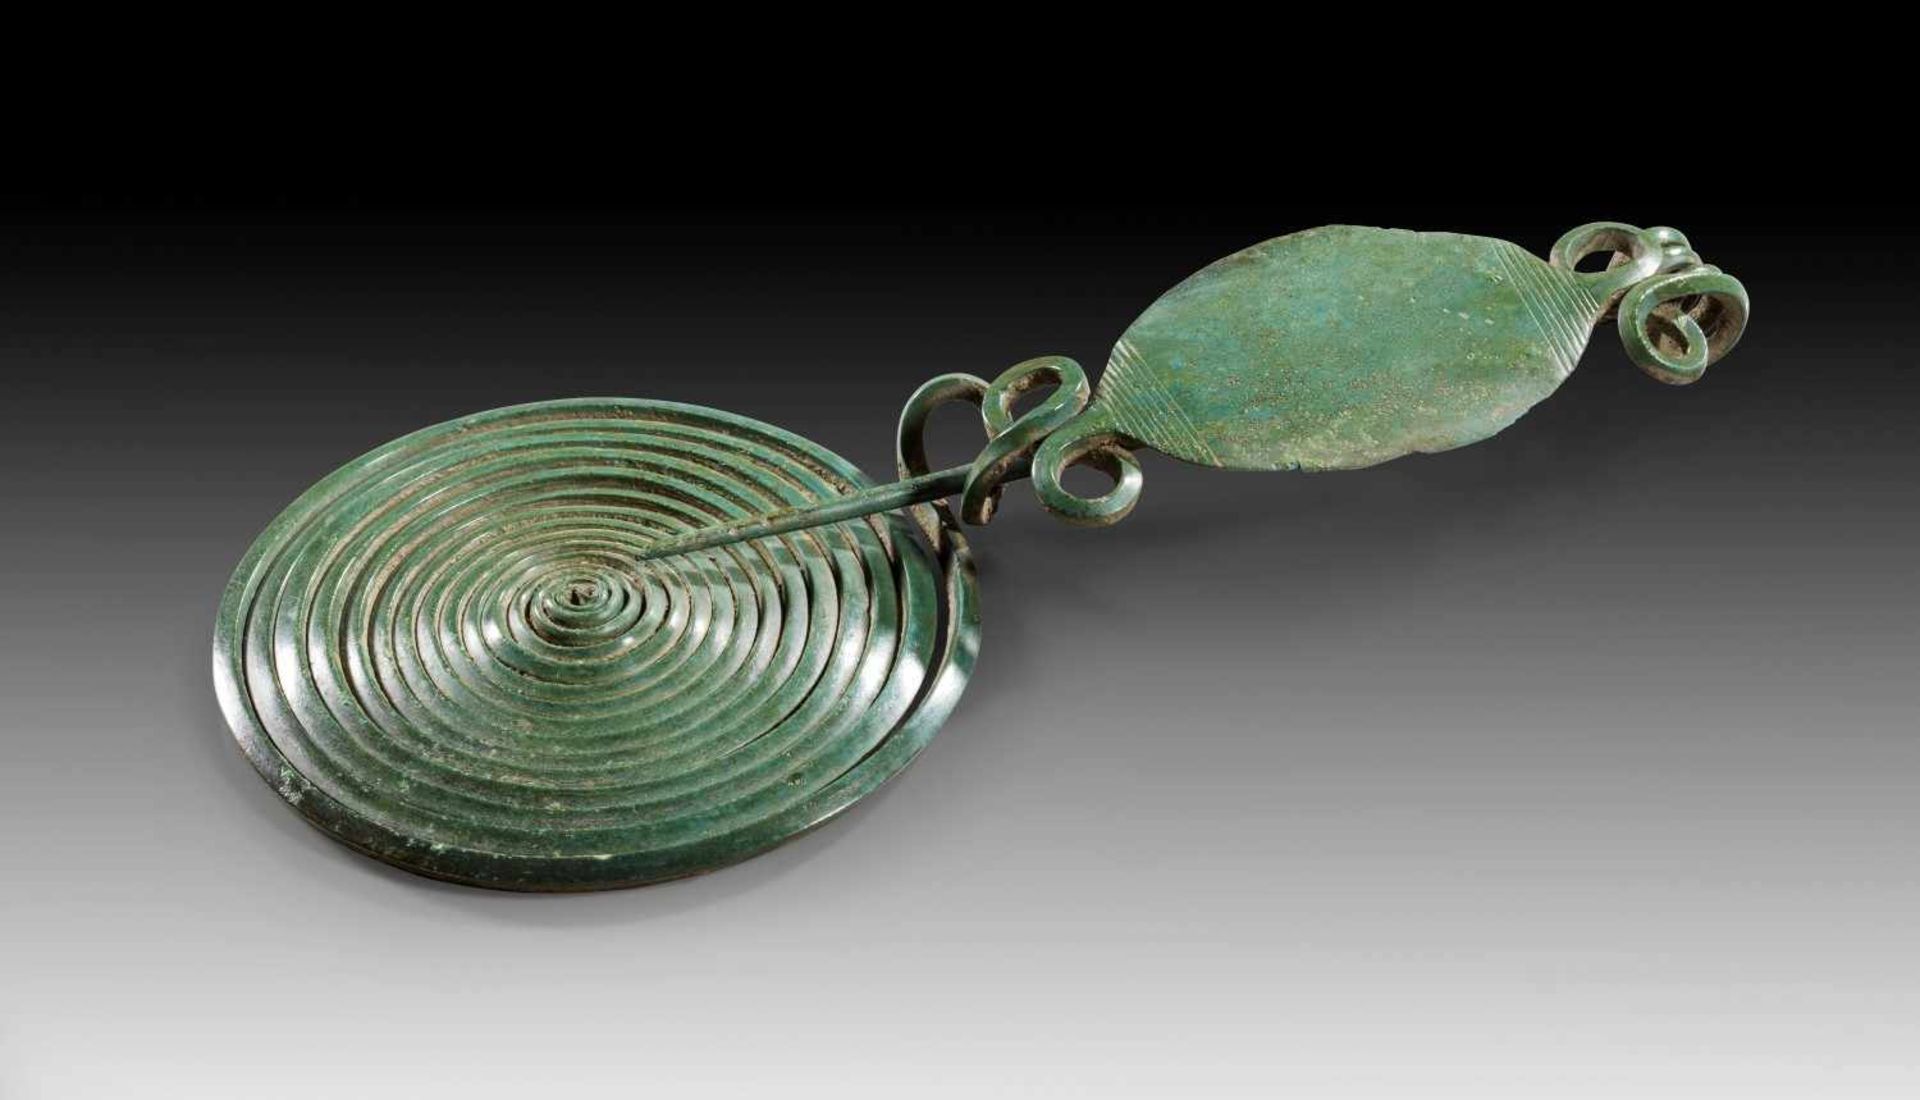 Blattbügelfibel. Späte Bronzezeit, Hallstatt B, 11. - 10. Jh. v. Chr. L 16,8cm, ø Spirale 7,8cm.